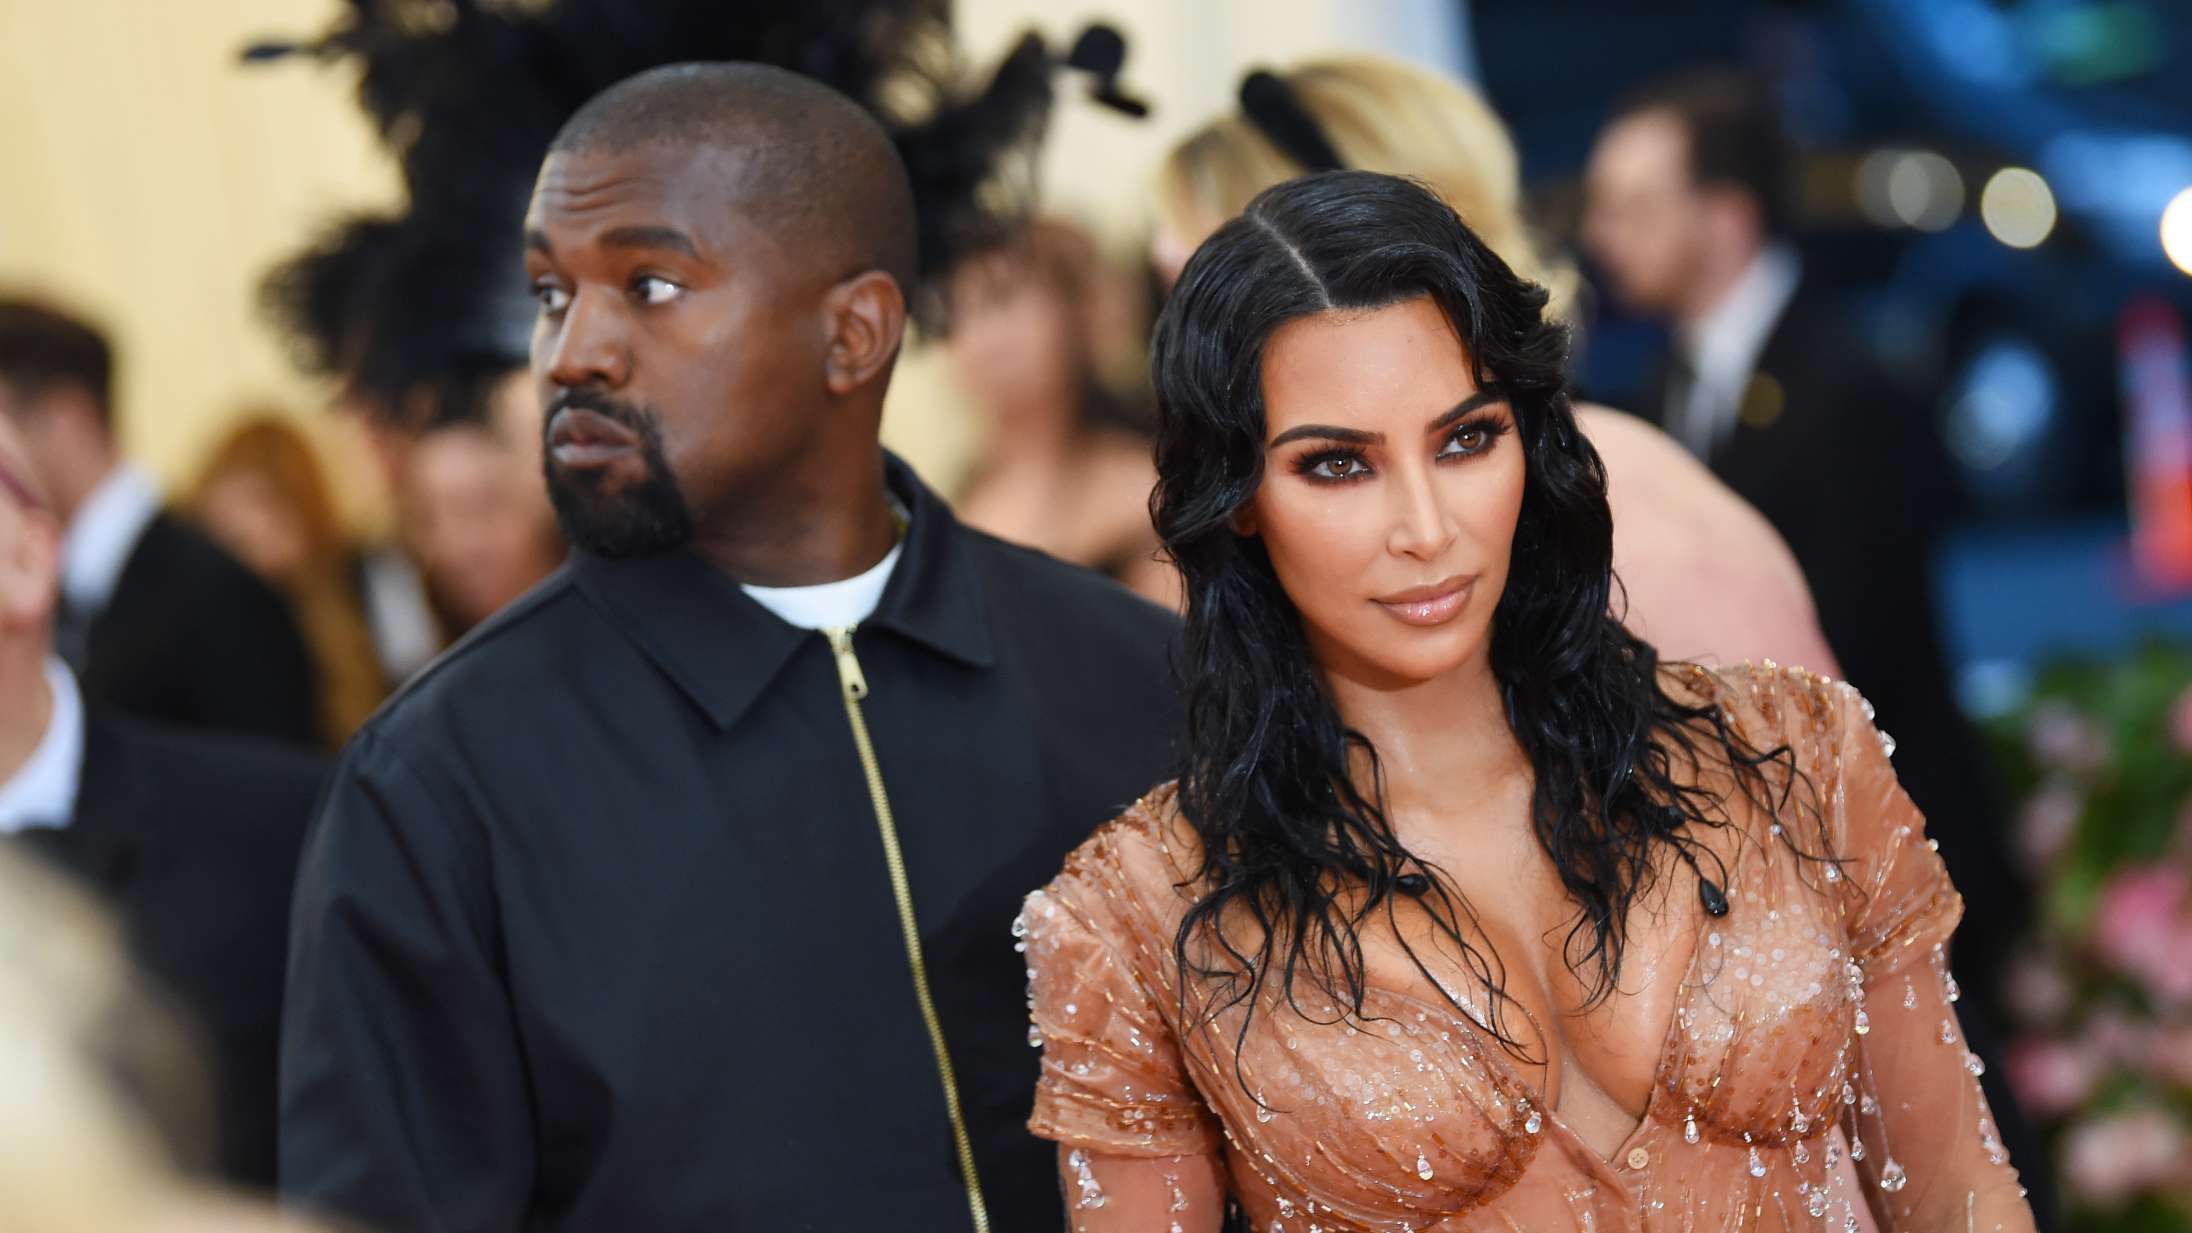 Endnu et Kardashian-meme er født: Kanye West fejrer Kim med bizart hologram af afdød far